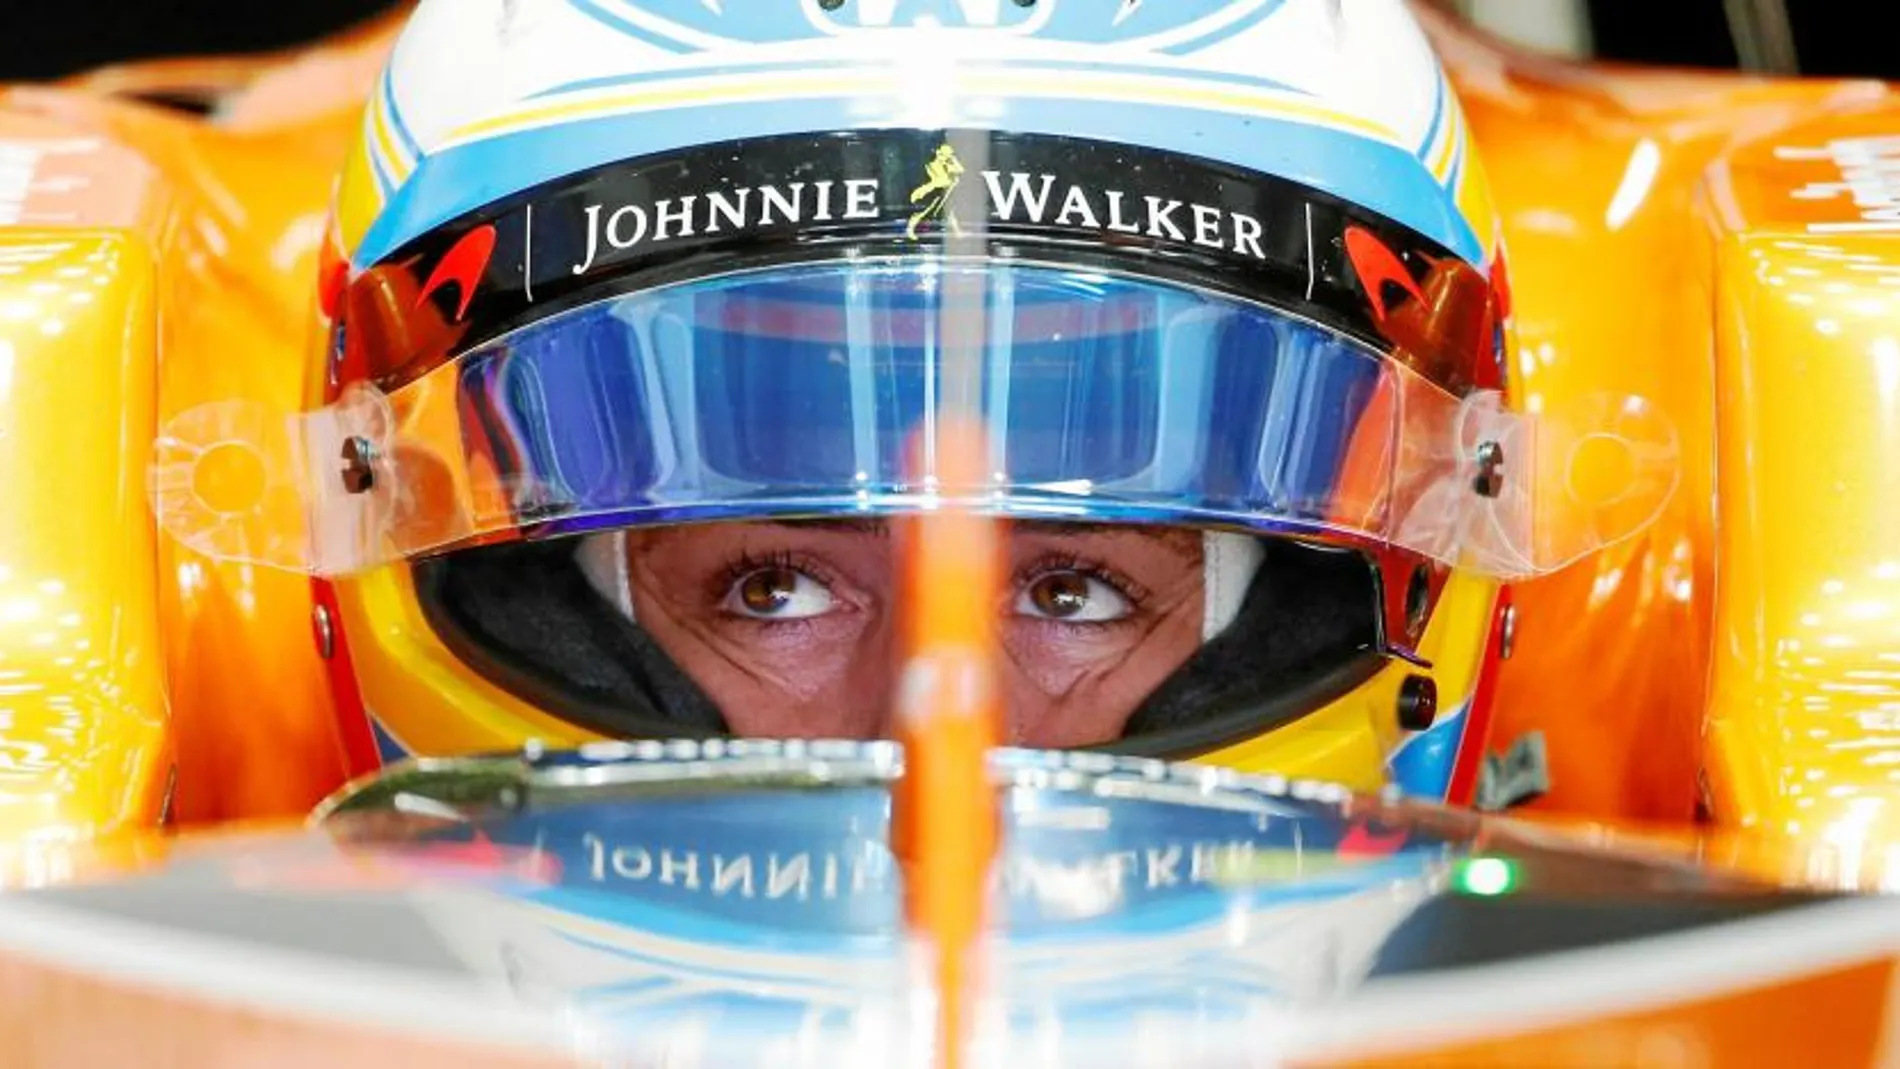 Fernando Alonso consiguió que España se paralizara para ver sus carreras. La gente conoció la Fórmula 1 y el asturiano fue un referente. El domingo lo deja, pero podría volver